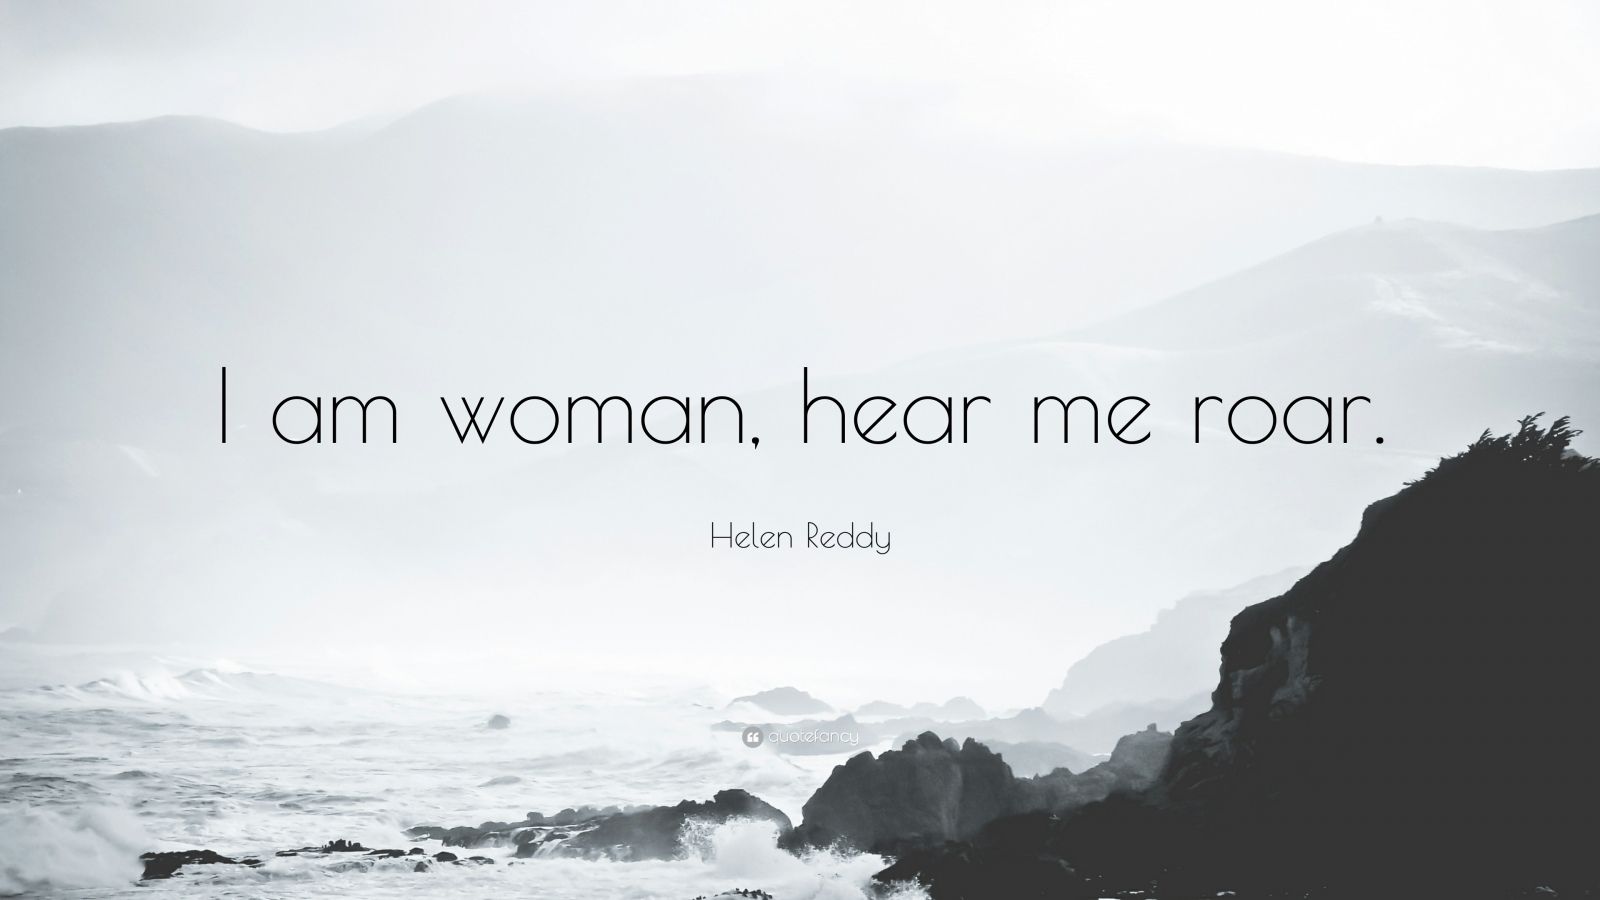 Helen Reddy Quote: “I am woman, hear me roar.”